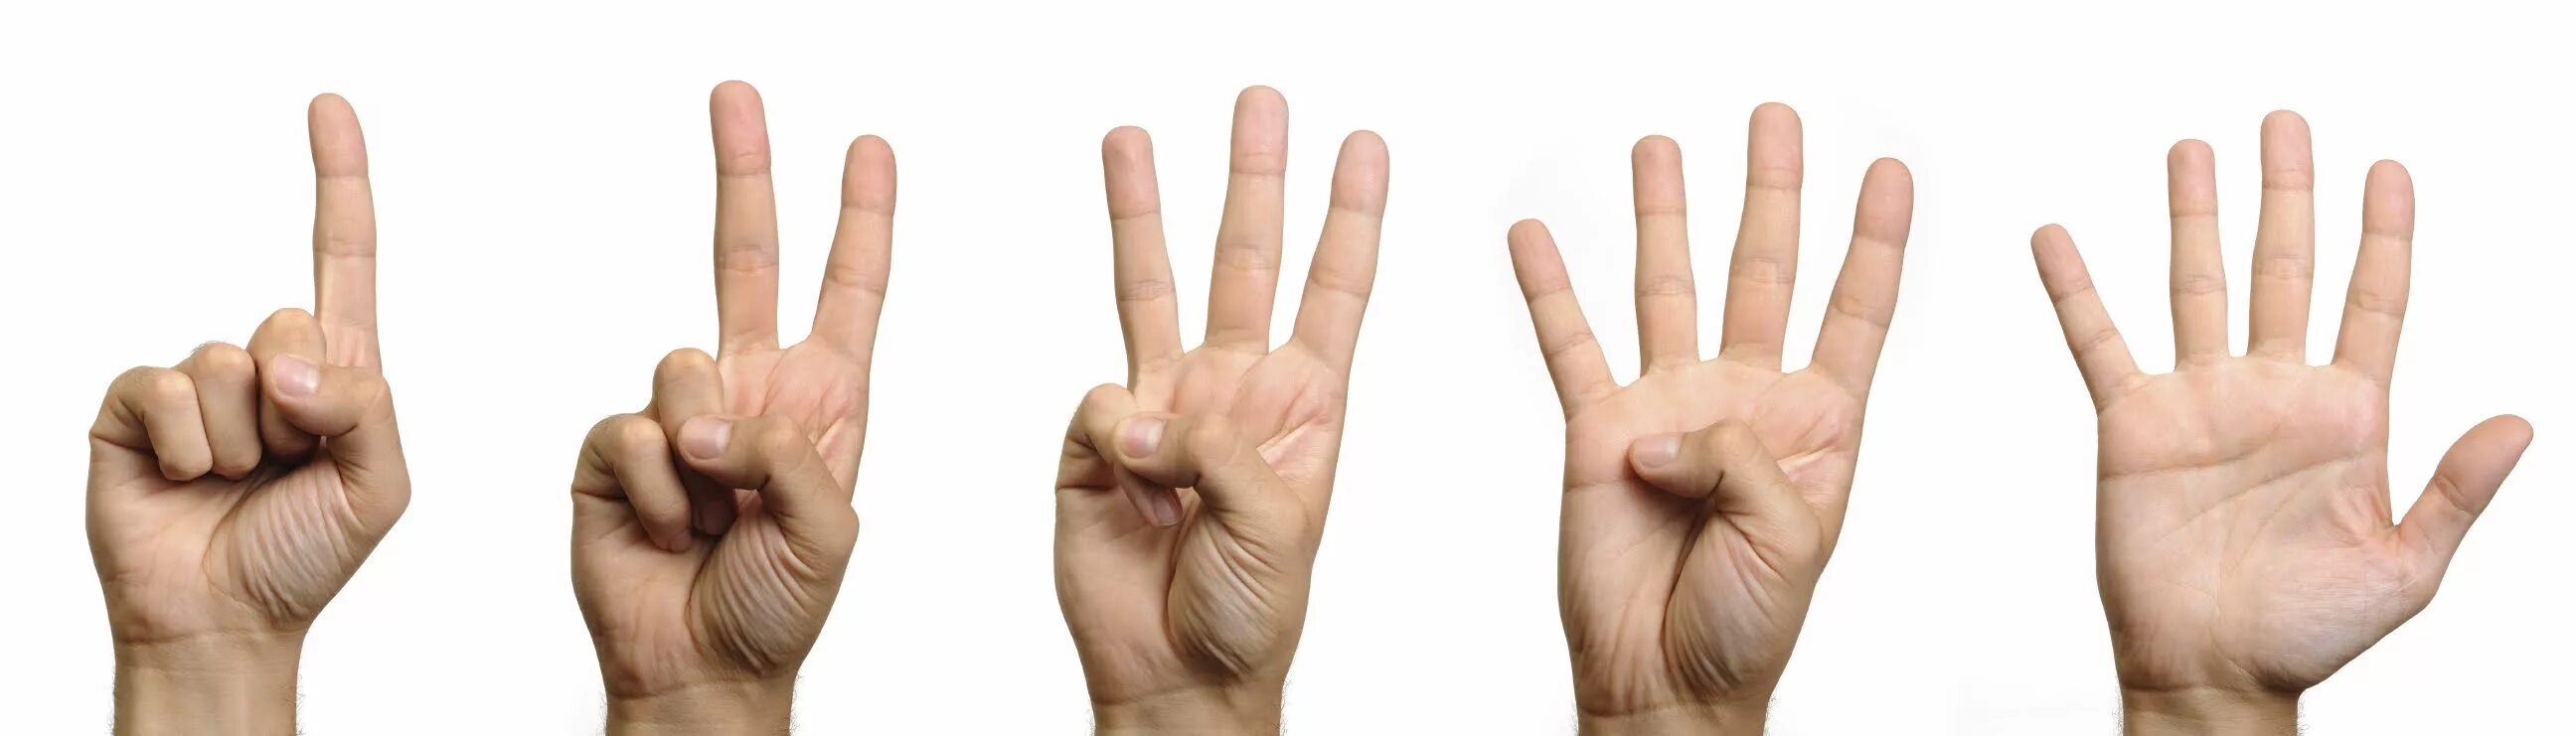 2.1 2. Первое палец. Пальцы 1 2 3 4 5. Один два три на пальцах. Жест четыре пальца.